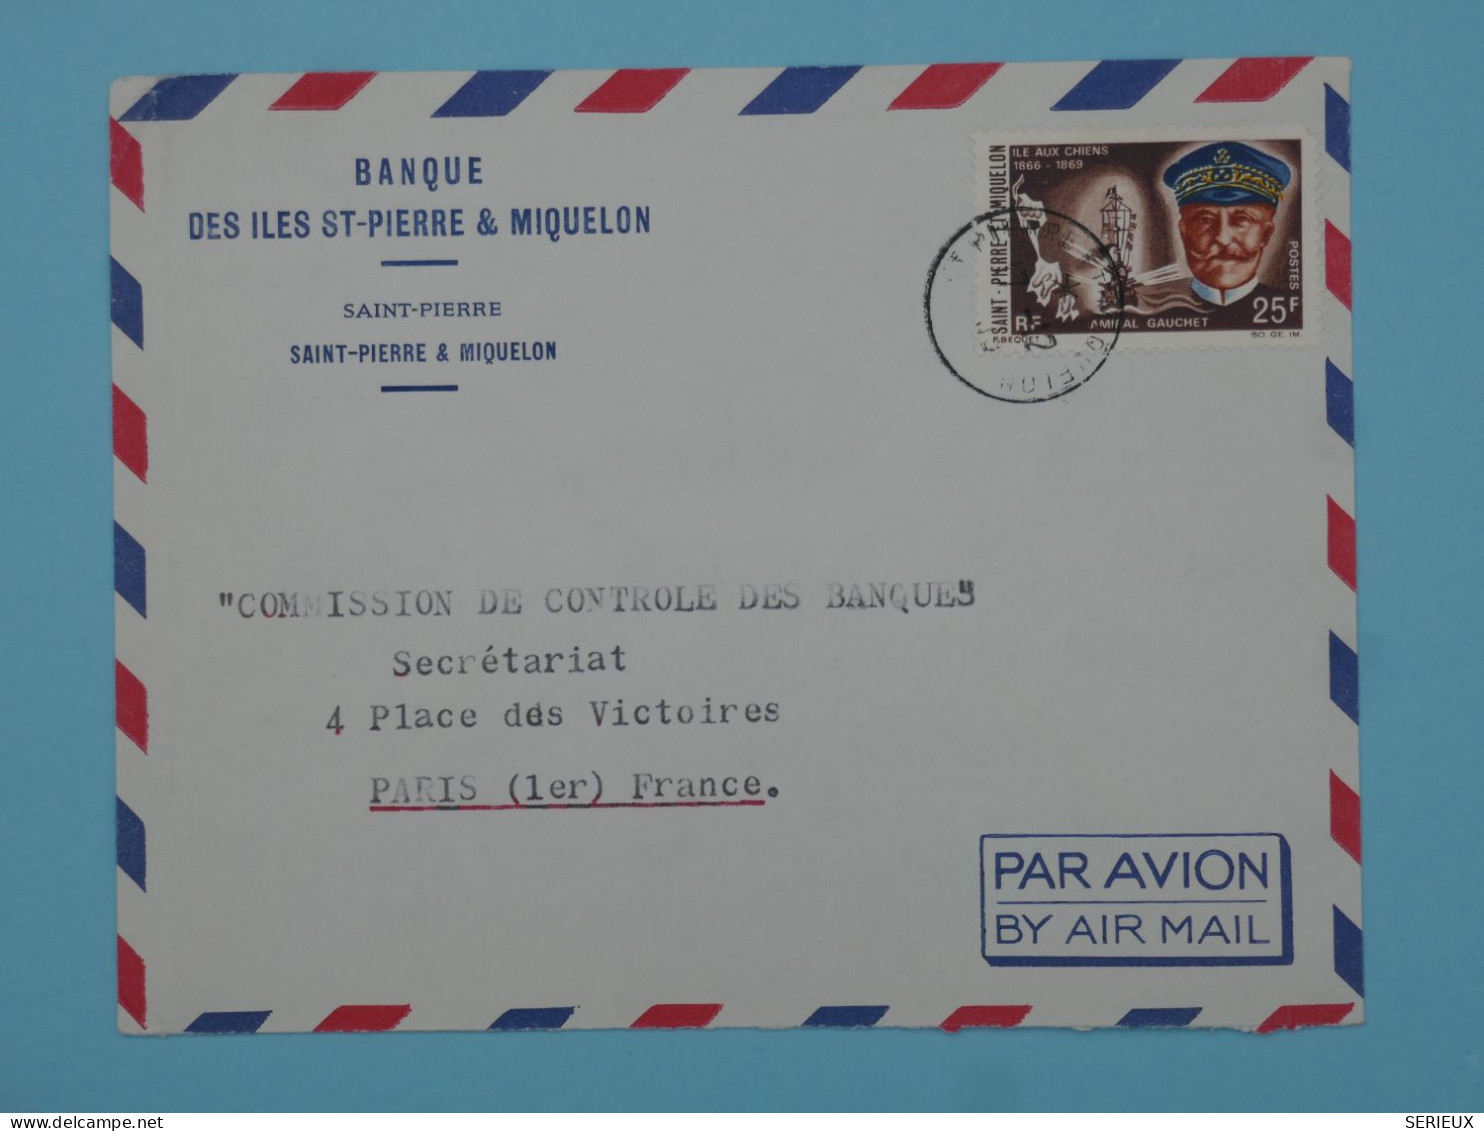 BT15  ST PIERRE & MIQUELON  BELLE LETTRE  1966 BANQUE  PAR AVION A PARIS  FRANCE ++AFF. PLAISANT +++ - Briefe U. Dokumente